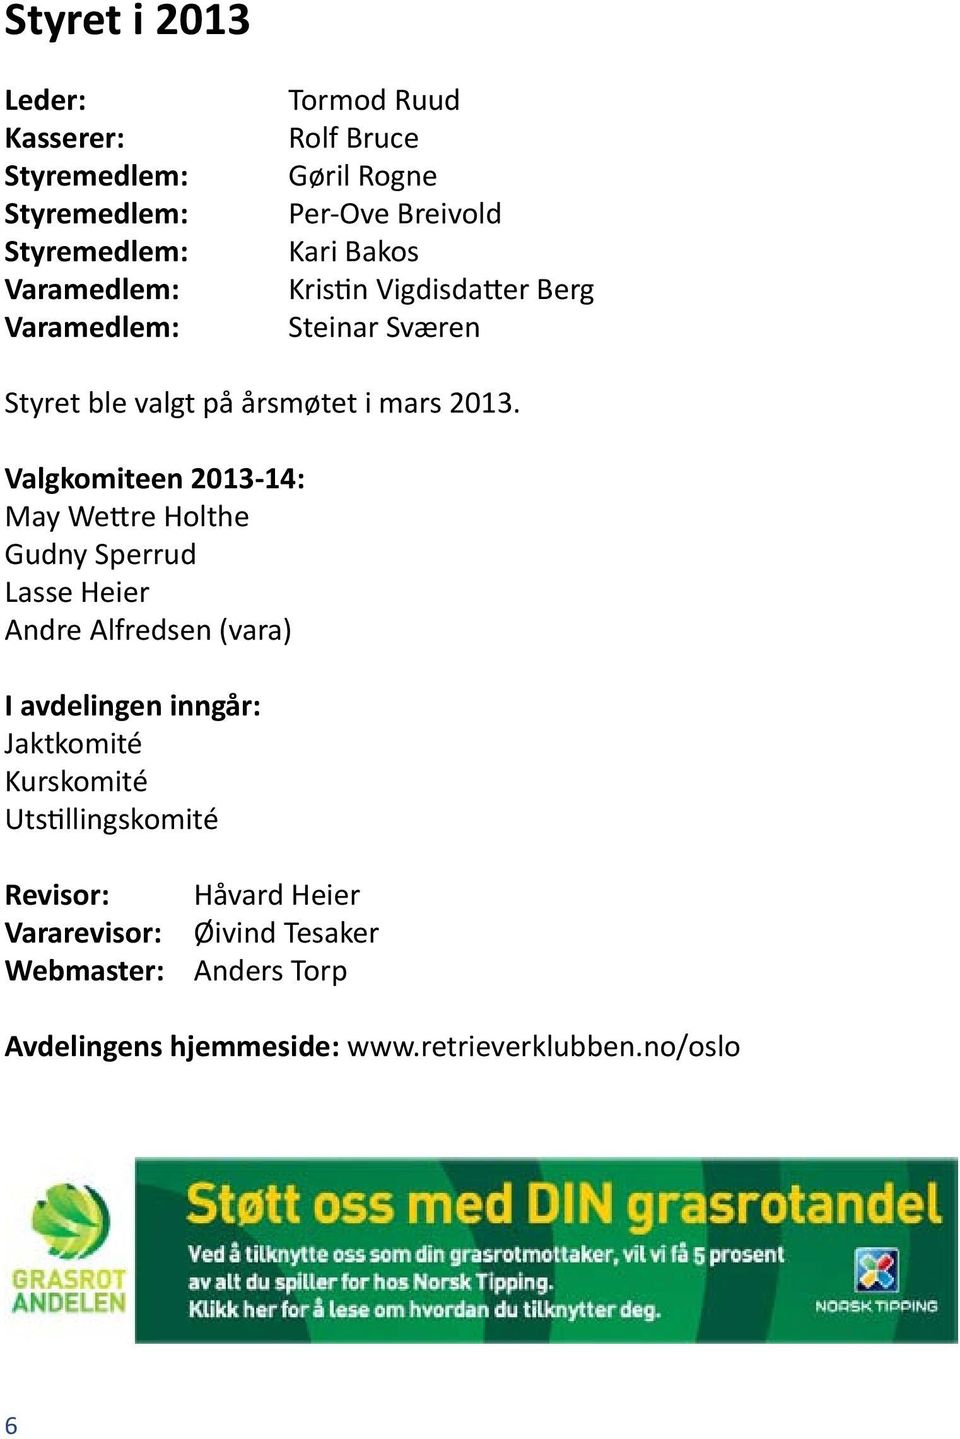 Valgkomiteen 2013-14: May Wettre Holthe Gudny Sperrud Lasse Heier Andre Alfredsen (vara) I avdelingen inngår: Jaktkomité